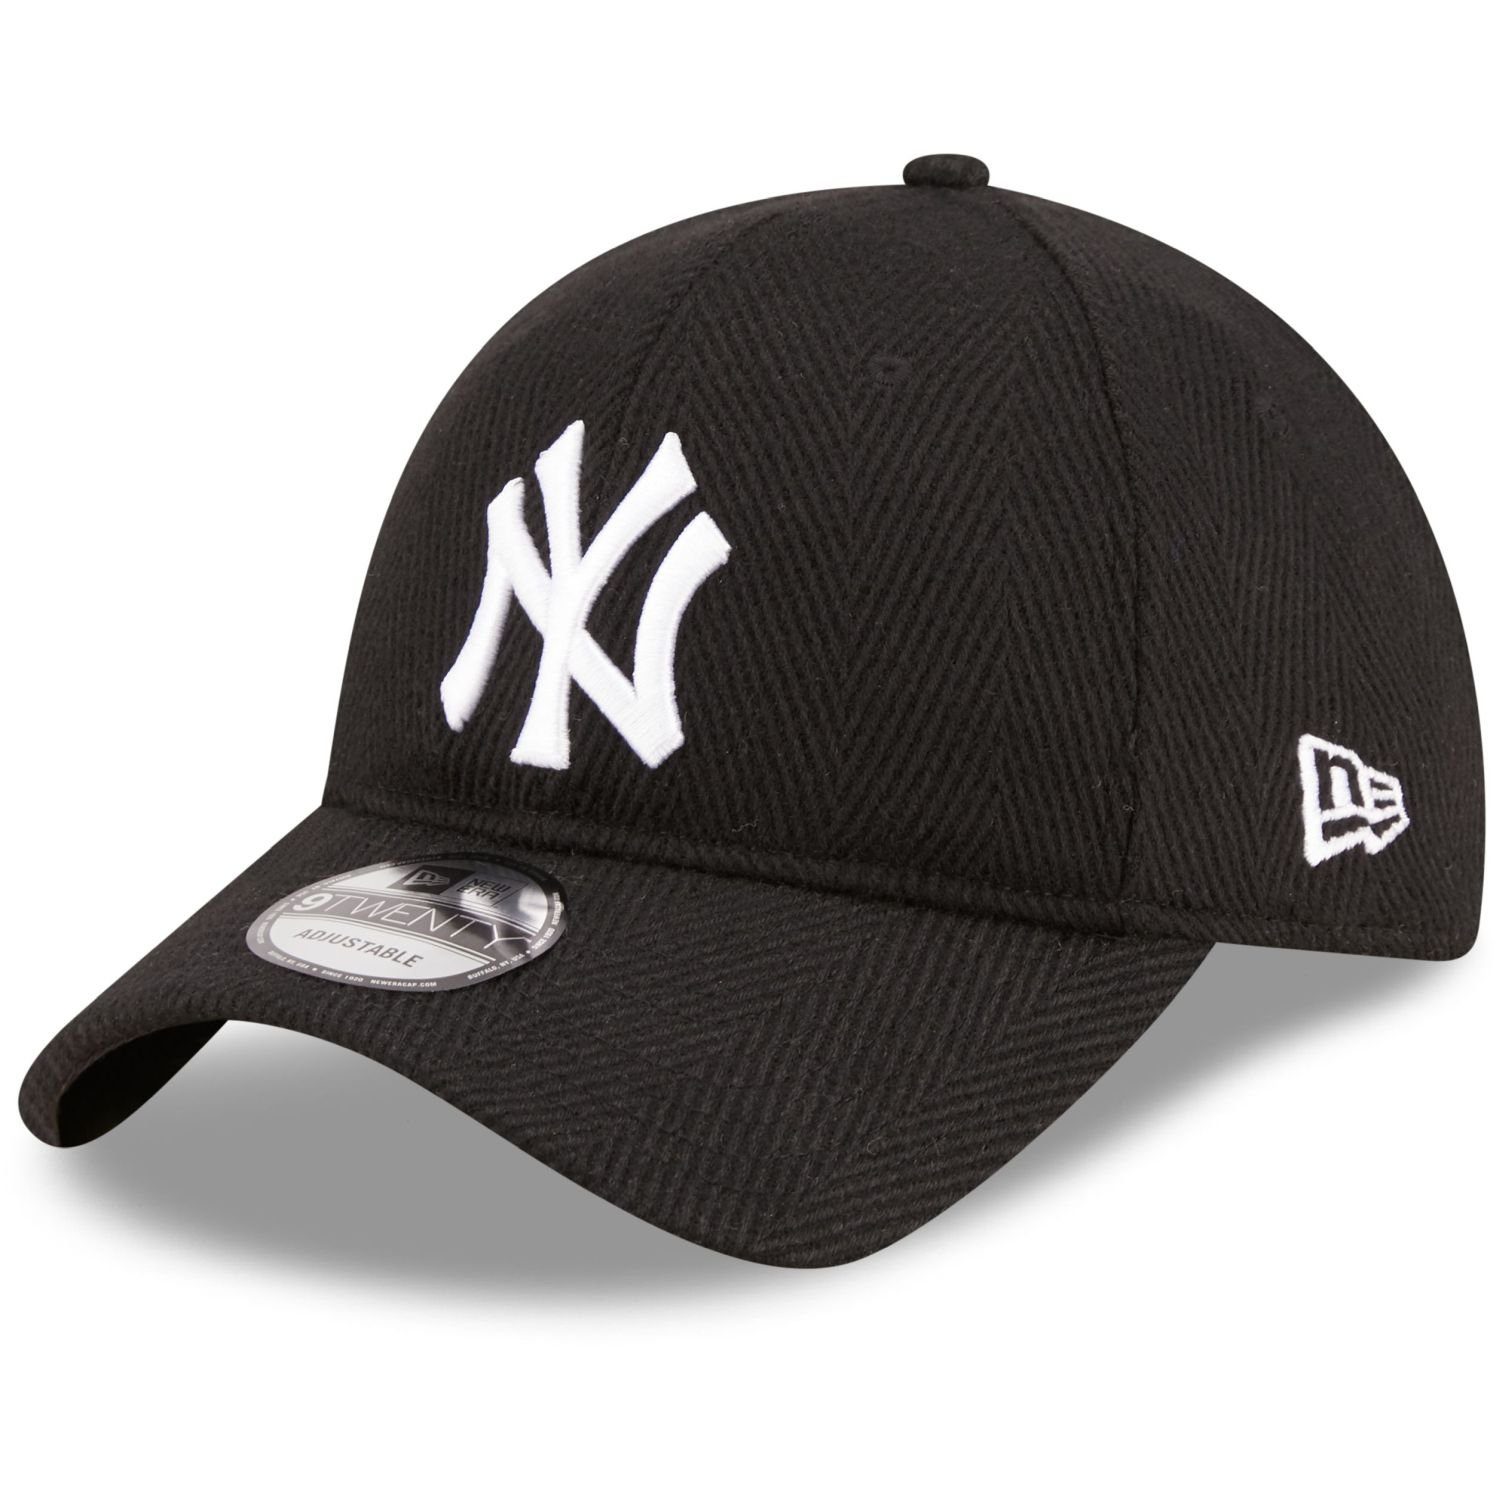 New New Yankees Era Cap Baseball 9Twenty York schwarz